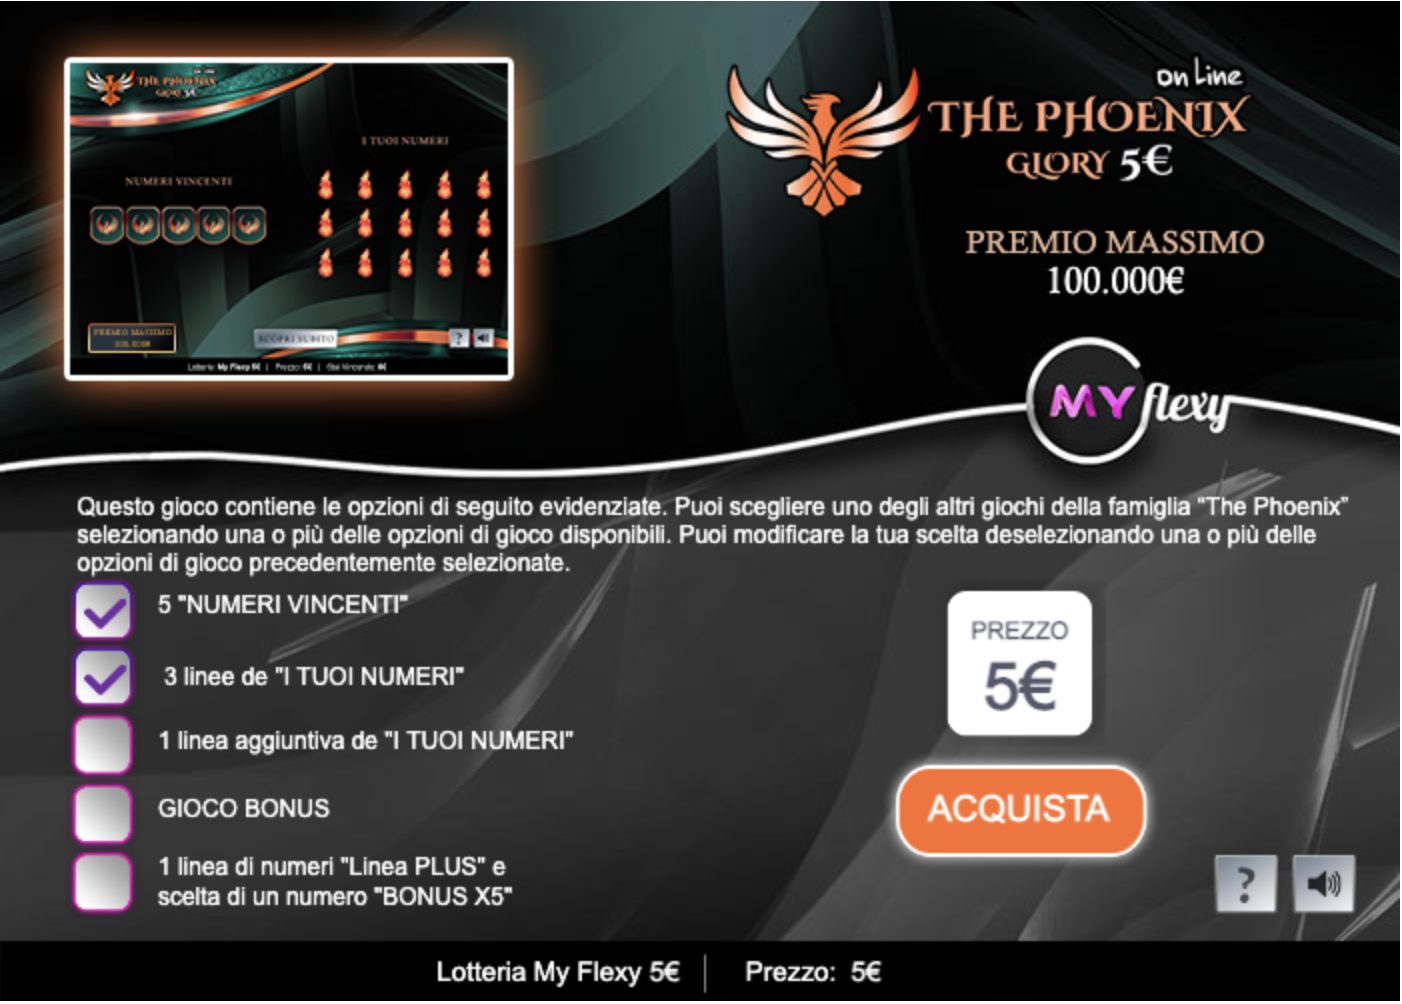 The Phoenix Glory 5€ online